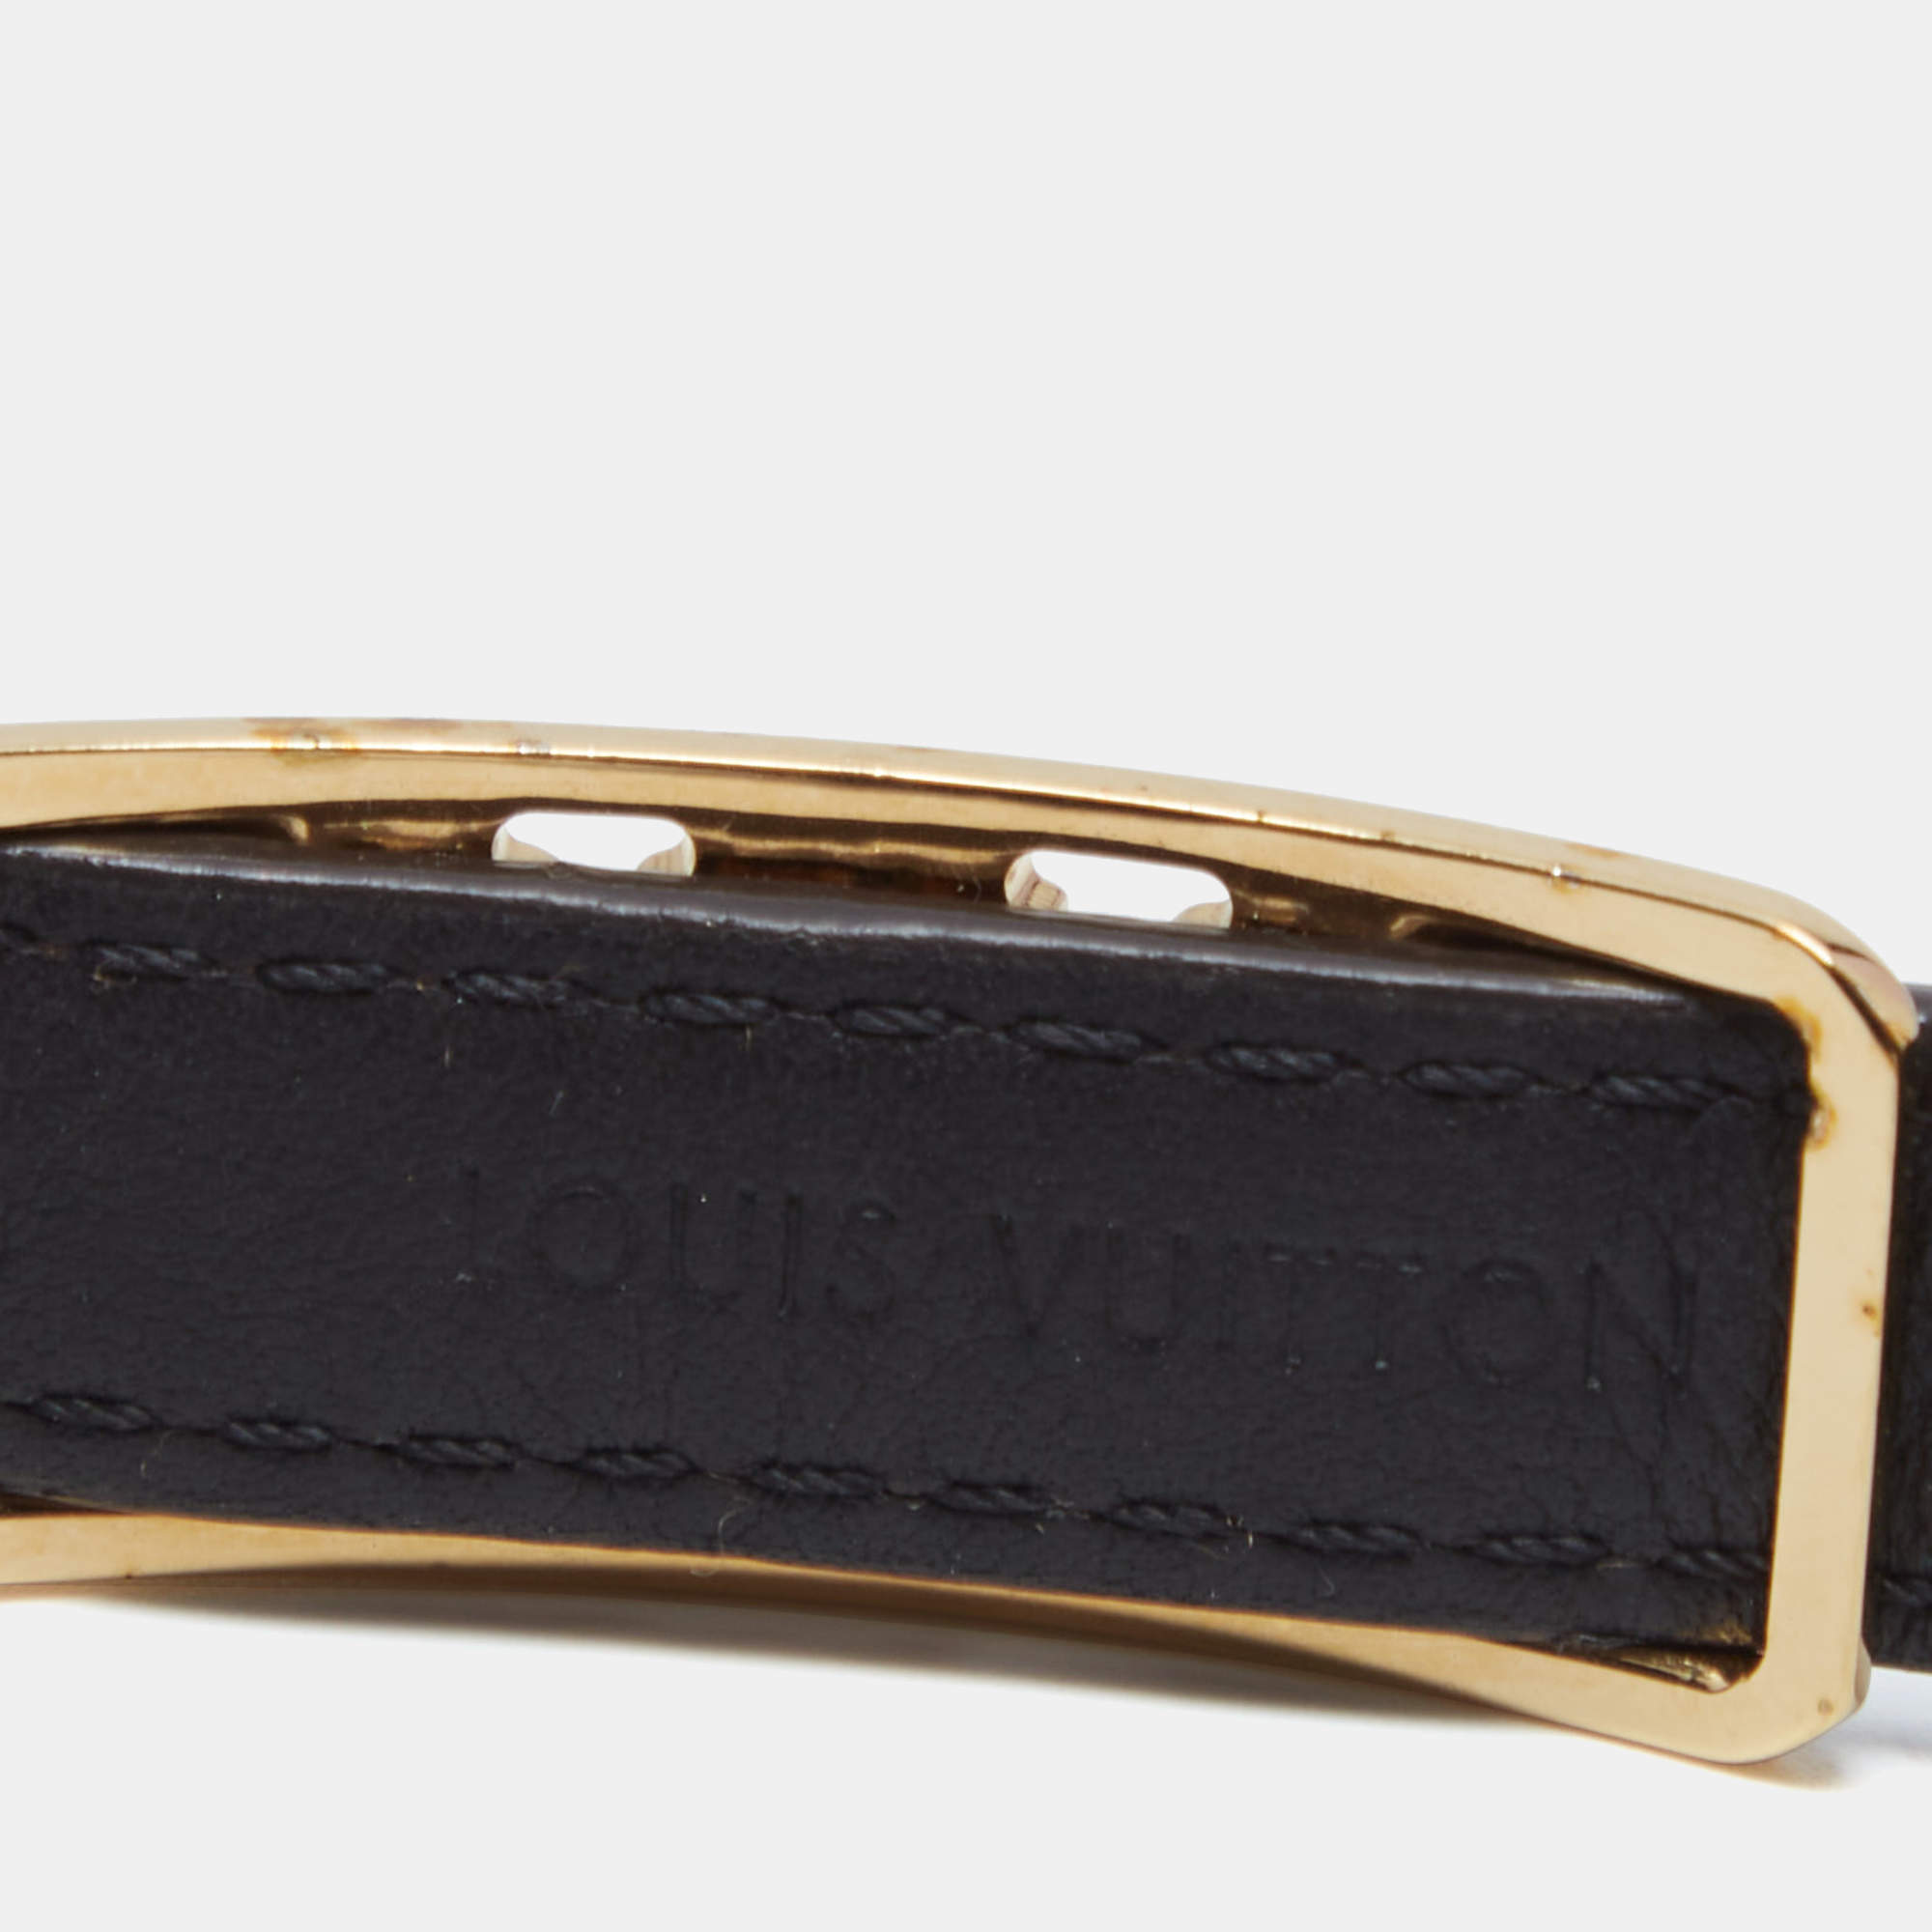 Louis Vuitton Brown Damier Ebene Sign It Double Wrap Bracelet 19